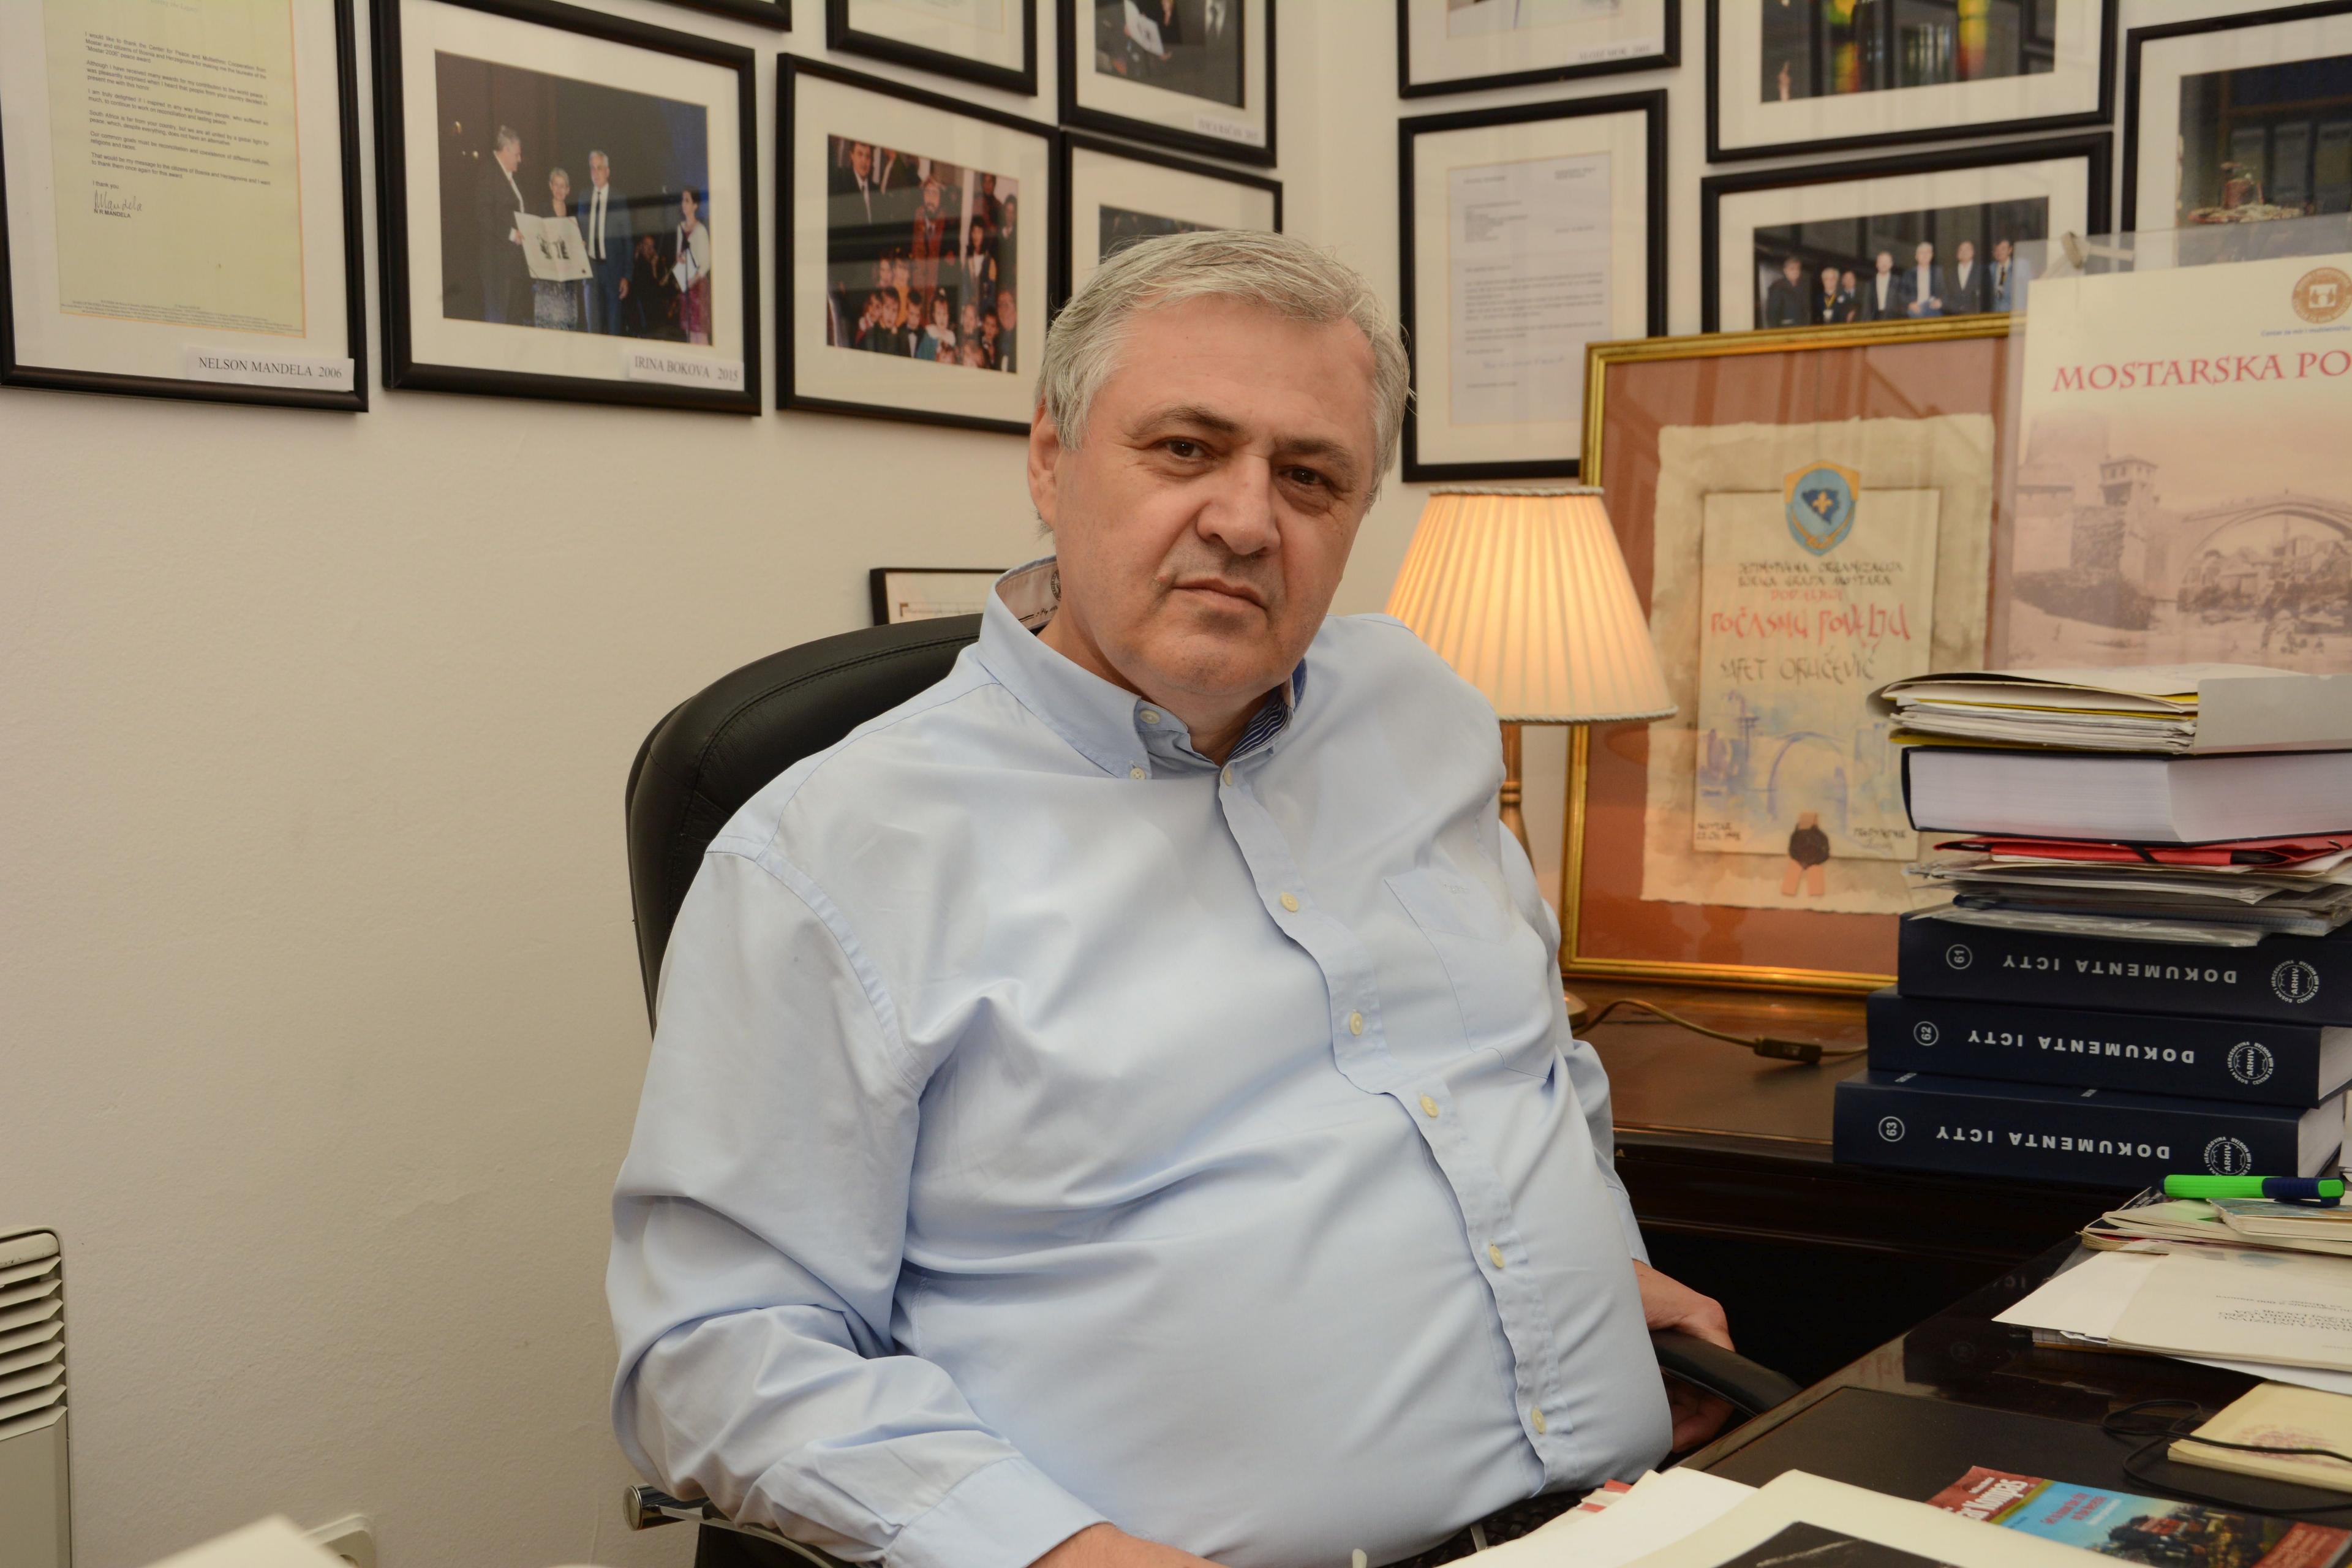 Bivši gradonačelnik Mostara Safet Oručević: Ne vjerujem nikome dok ne vidim svojim očima